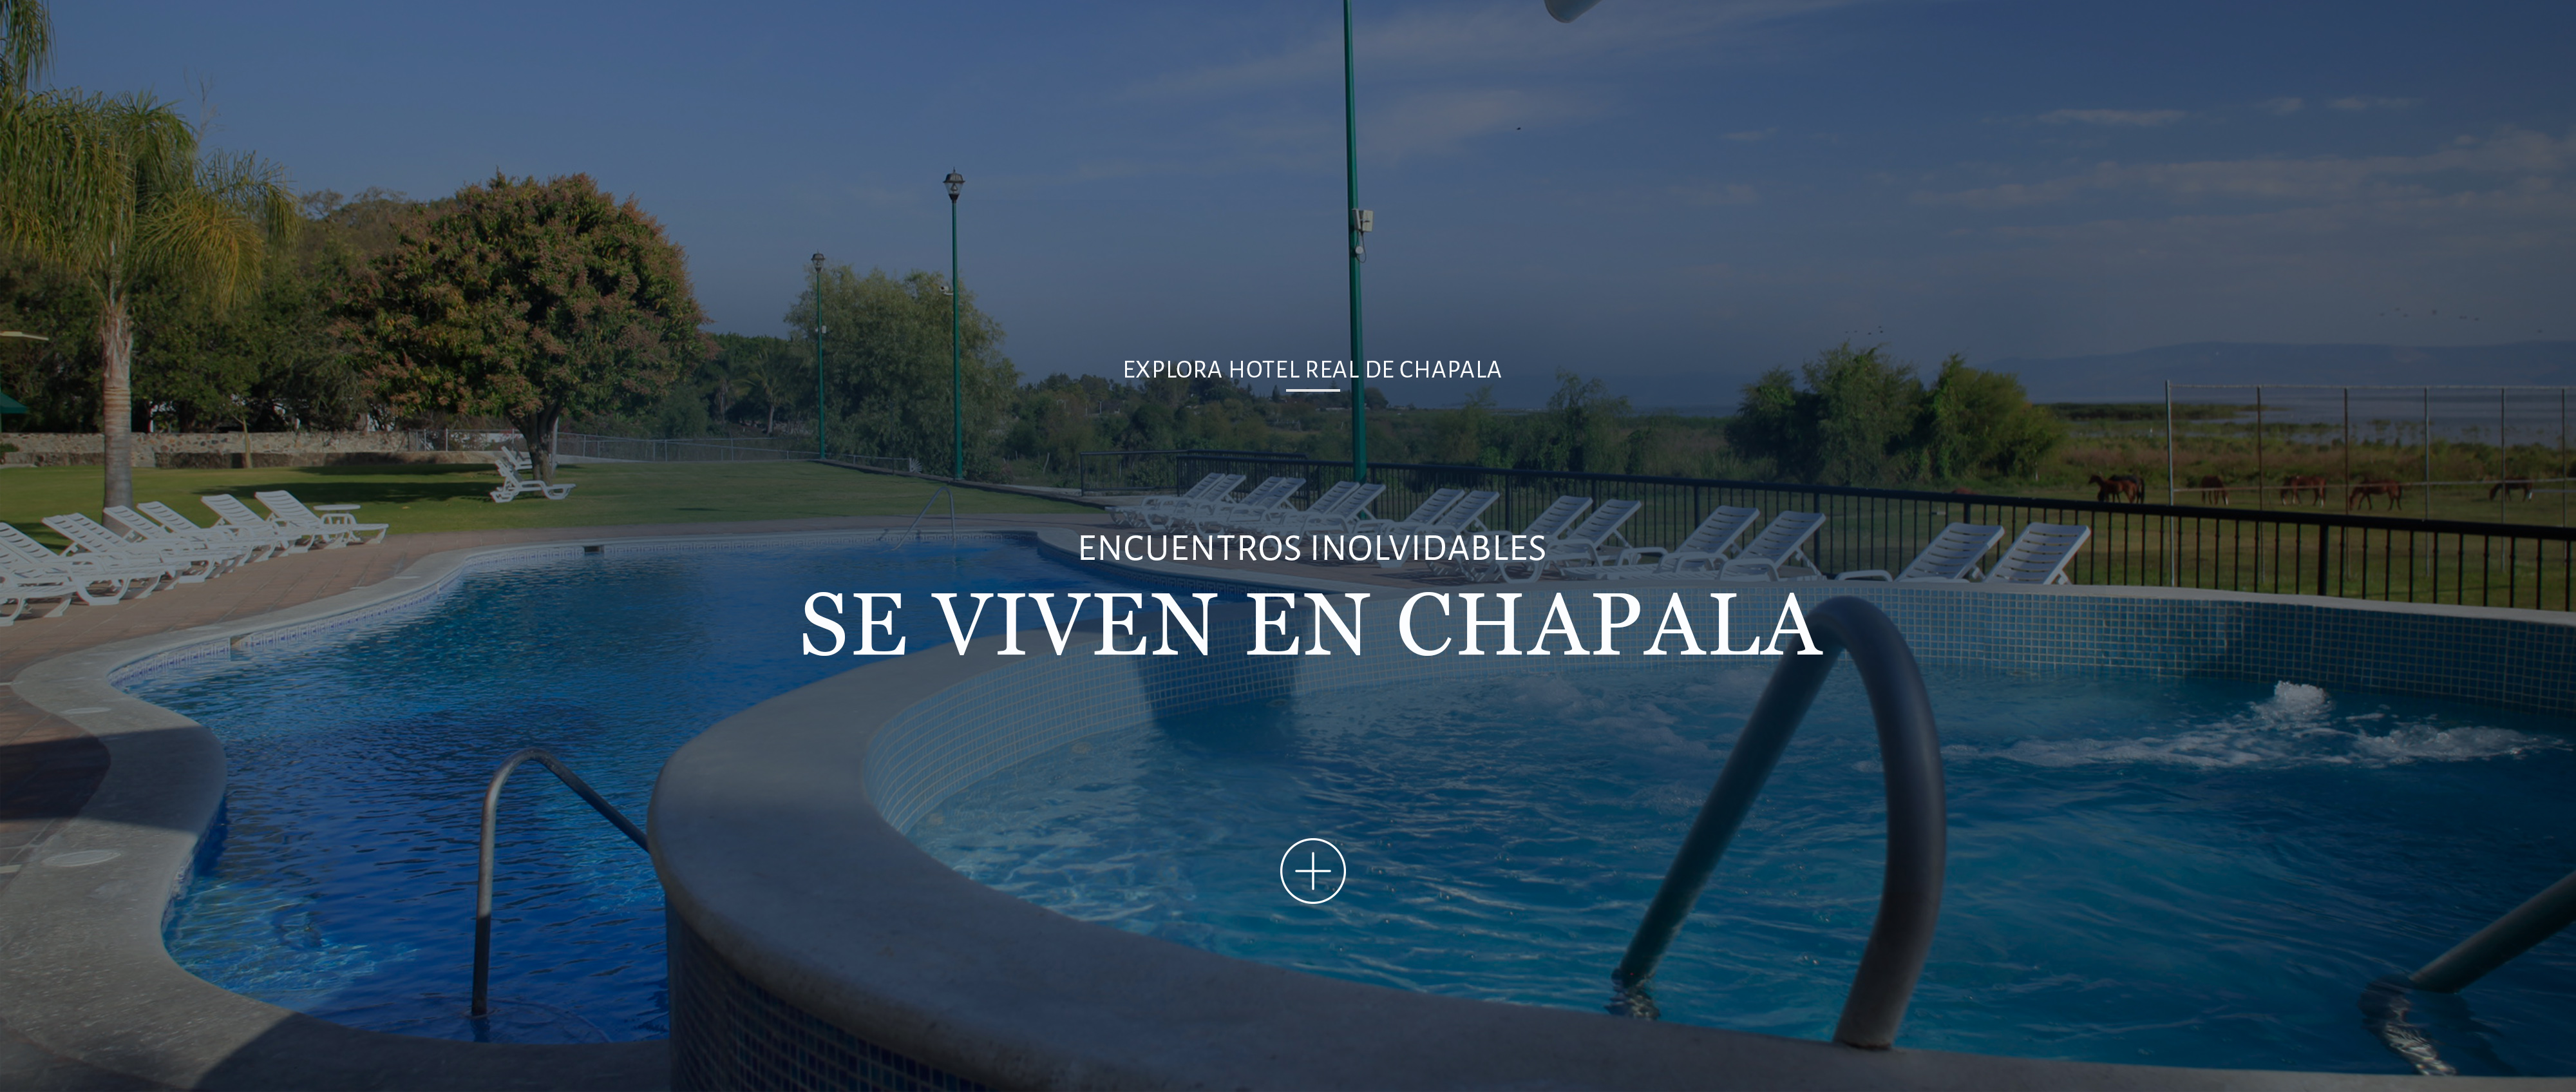 Hotel Real de Chapala, Vacaciones, Eventos, Grupos